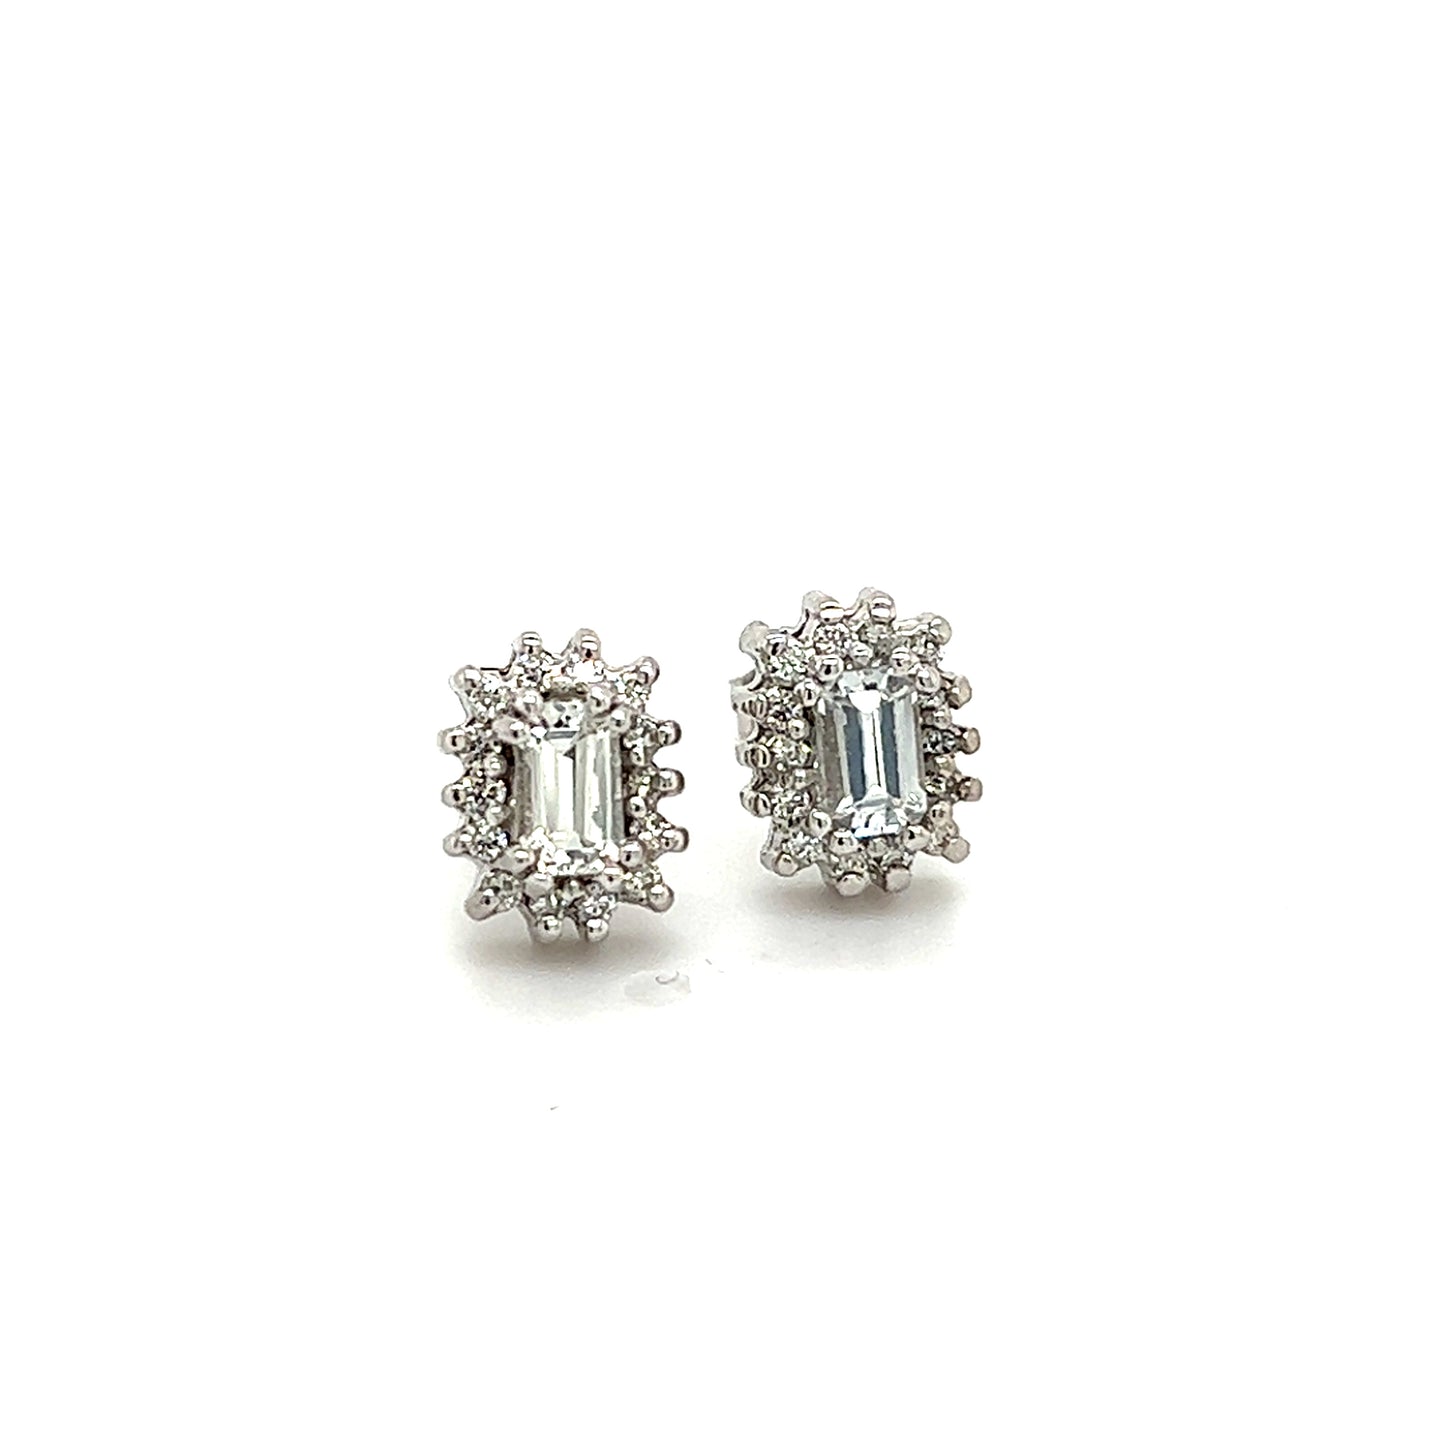 Natural Sapphire Diamond Stud Earrings 14k W Gold 0.94 TCW Certified $2950 121267 - Certified Fine Jewelry